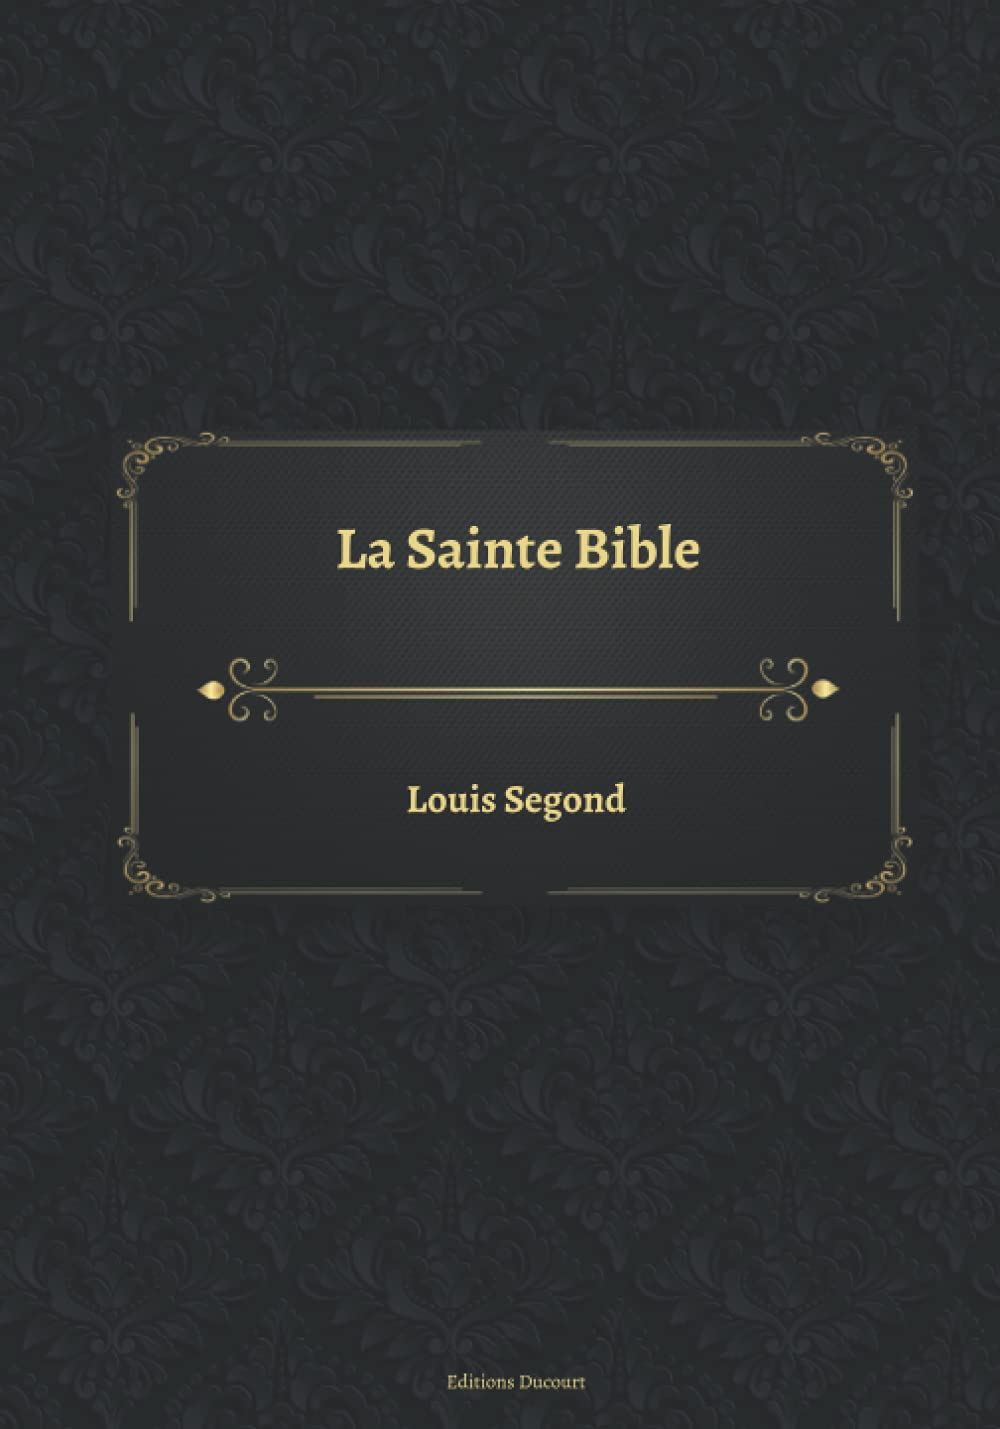 La Sainte Bible (French Edition)